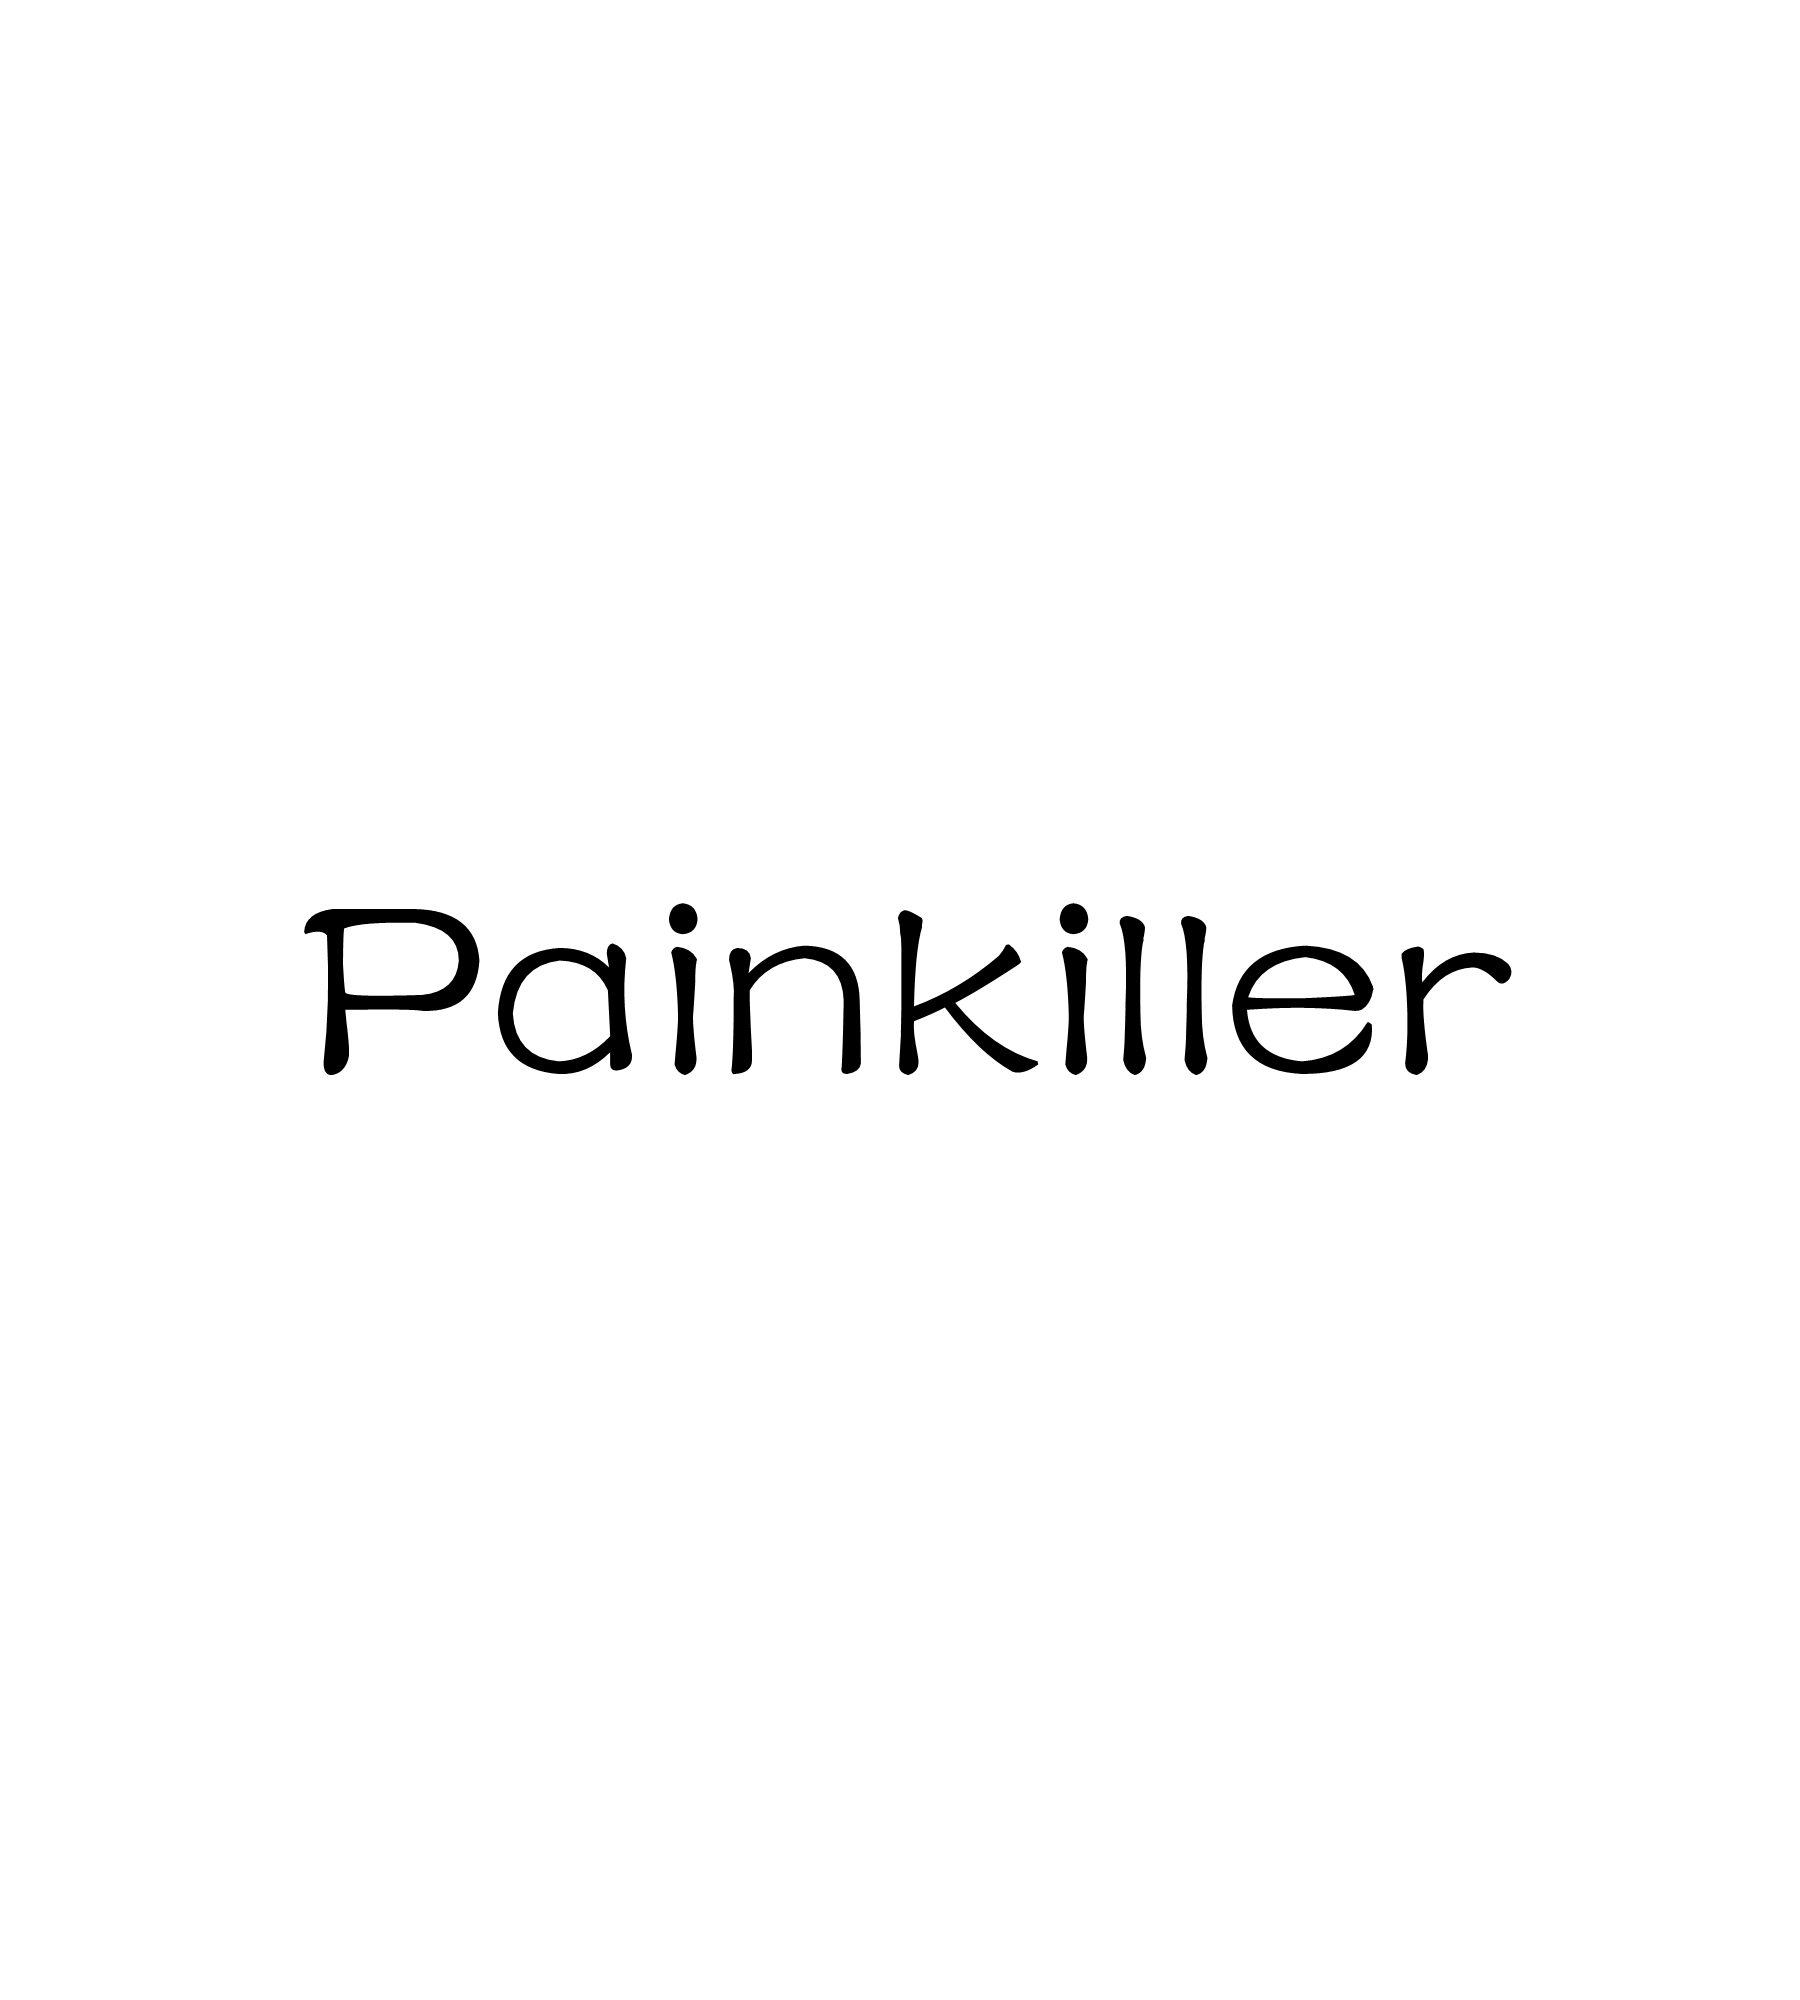 Painkiller(單詞)